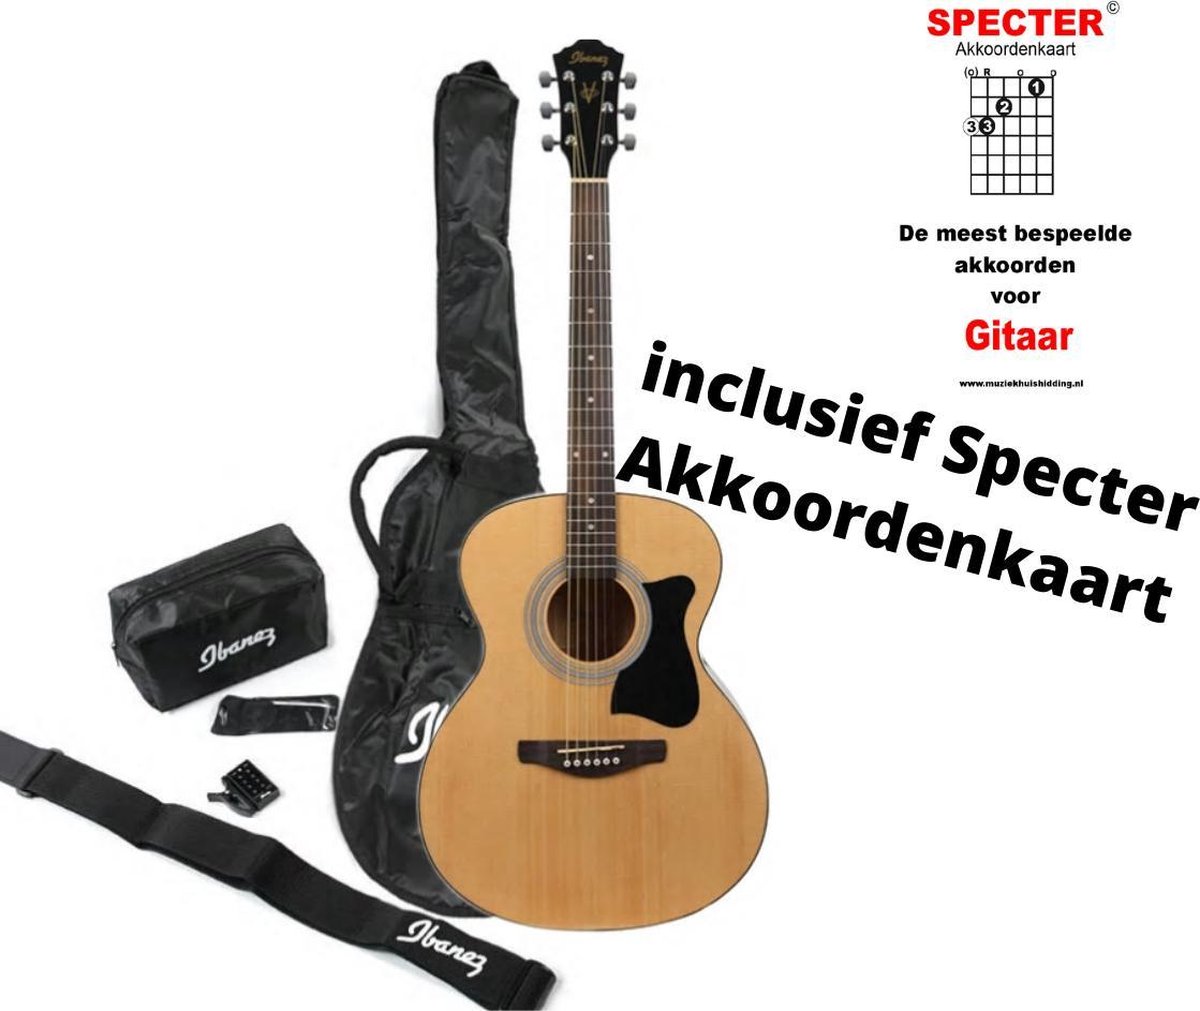 Ibanez akoestische gitaar pack met handige akkoordenkaart